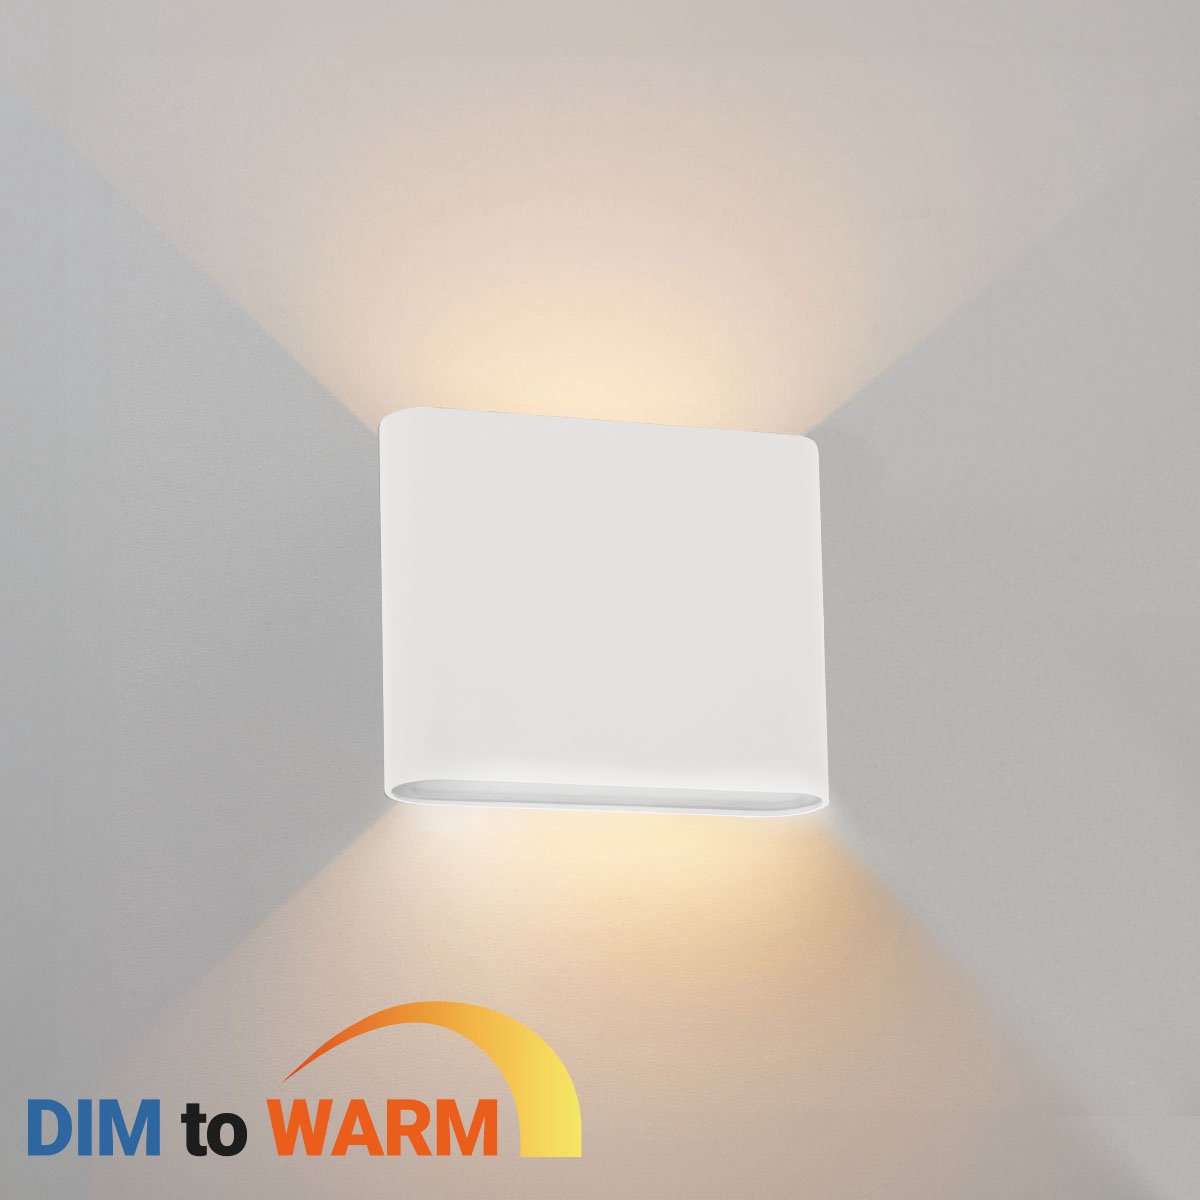 Ledmatters - Wandlamp Wit - Up & Down - Dimbaar - 5 watt - 510 Lumen - 1800-3000 Kelvin - Dim to Warm - IP65 Buitenverlichting